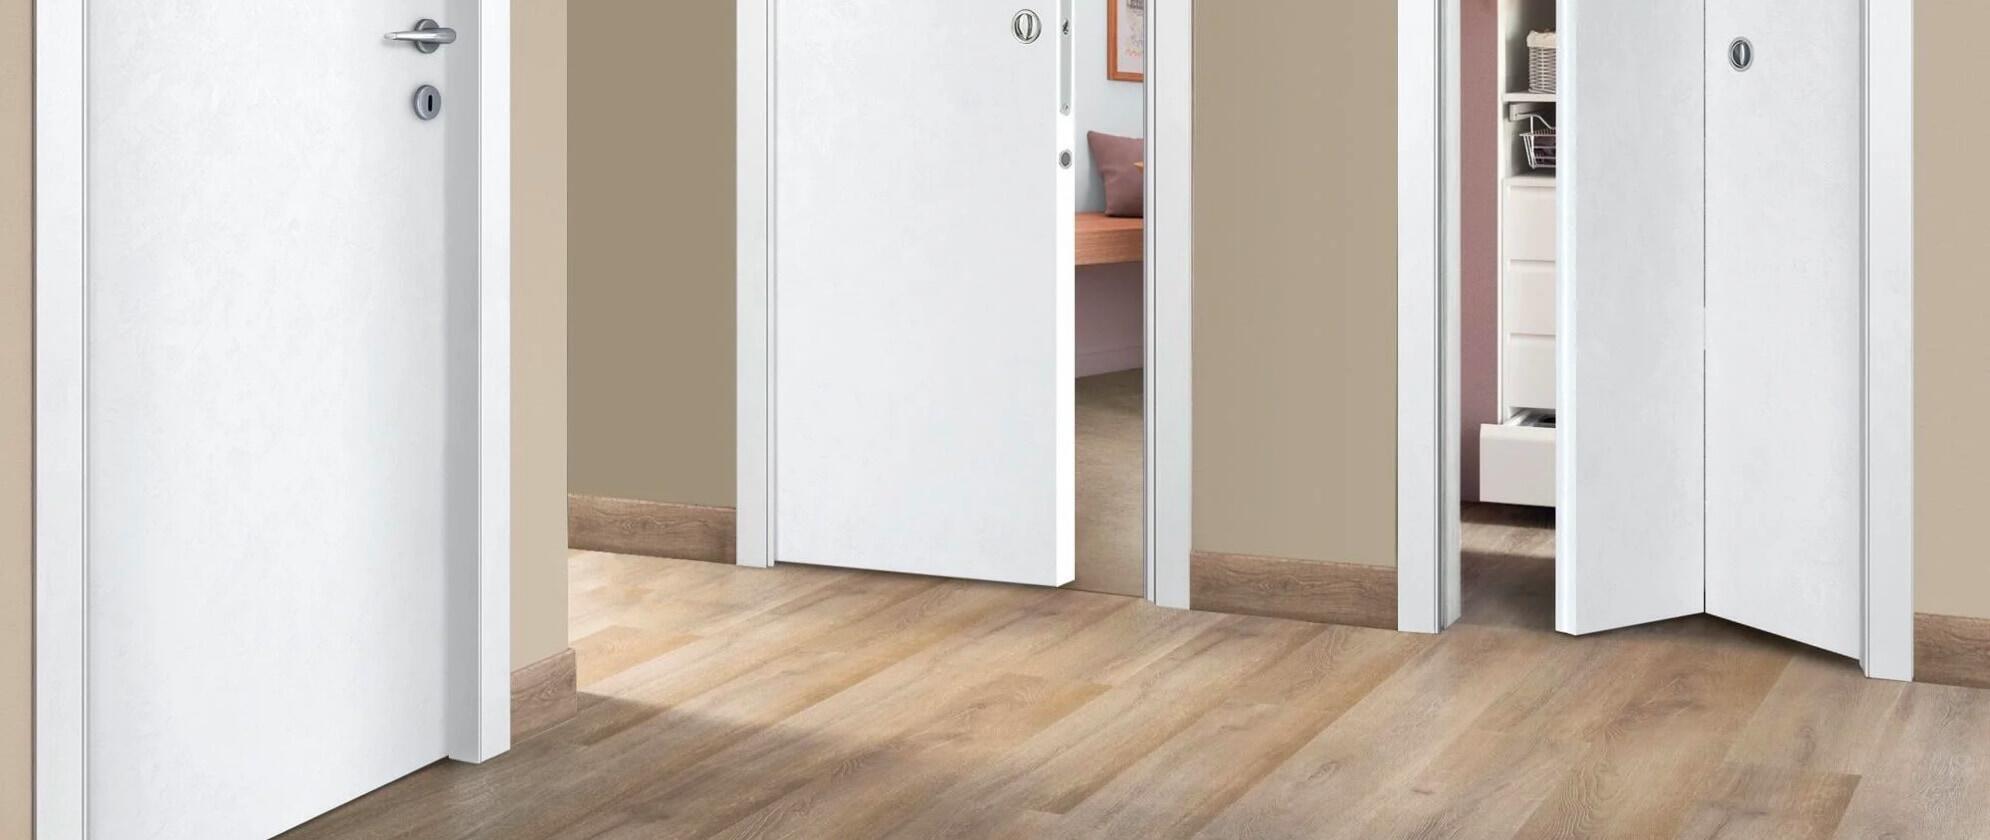 Come scegliere le porte interne in base al pavimento?